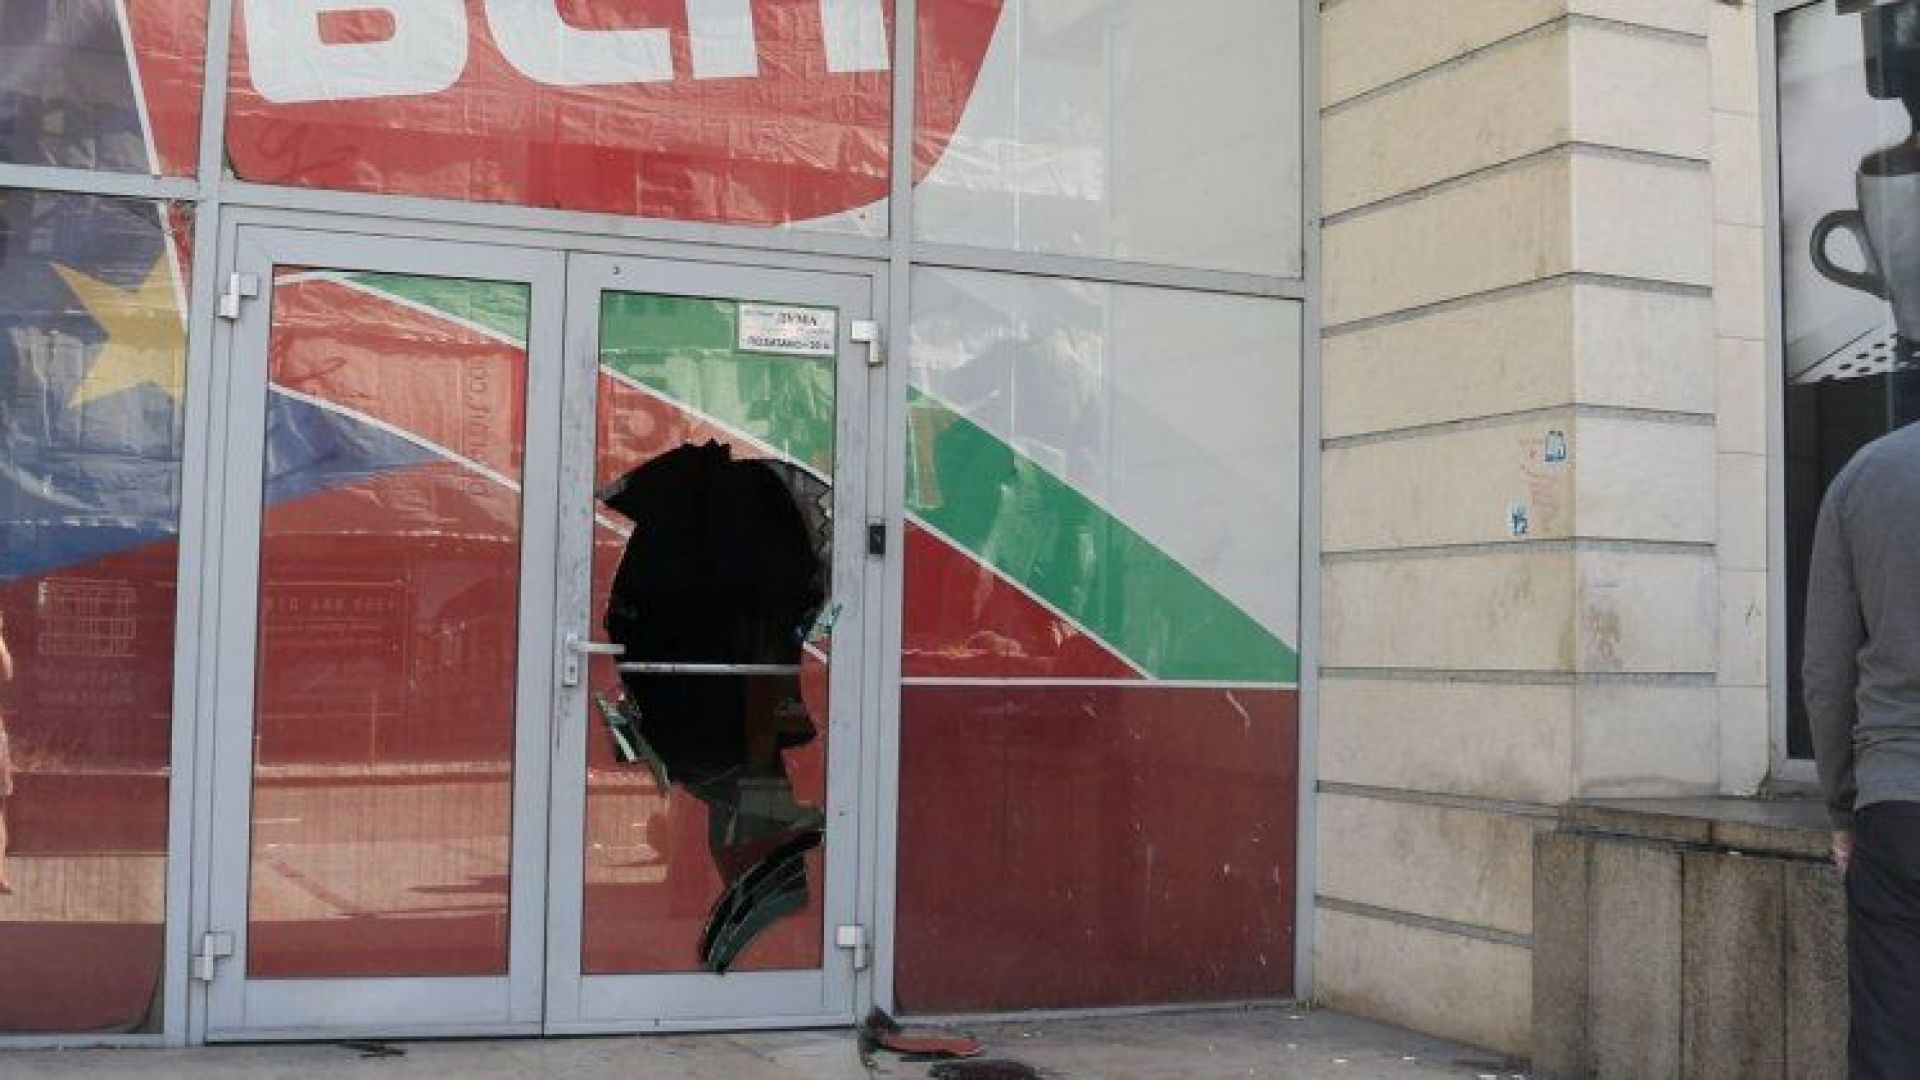 Днес вестник Дума осъмна с разбита врата. БСП осъжда този